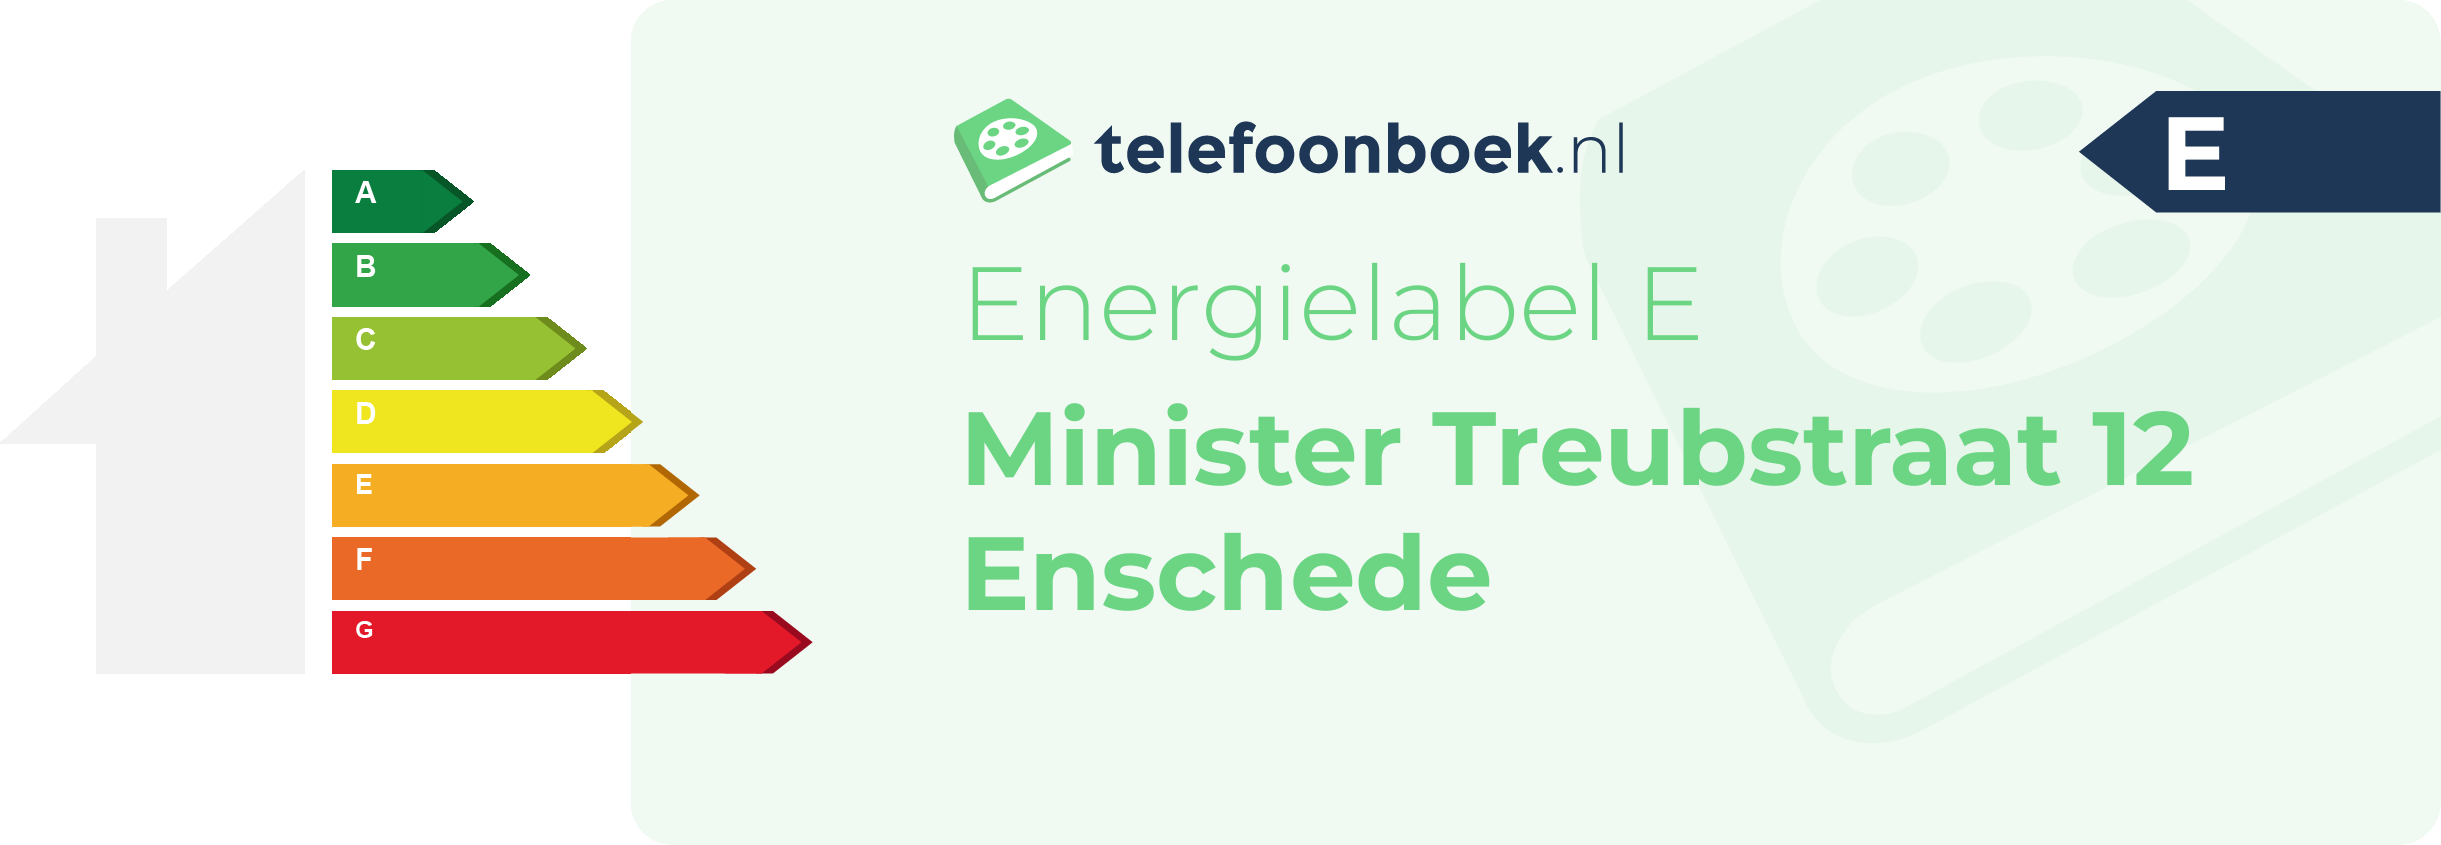 Energielabel Minister Treubstraat 12 Enschede